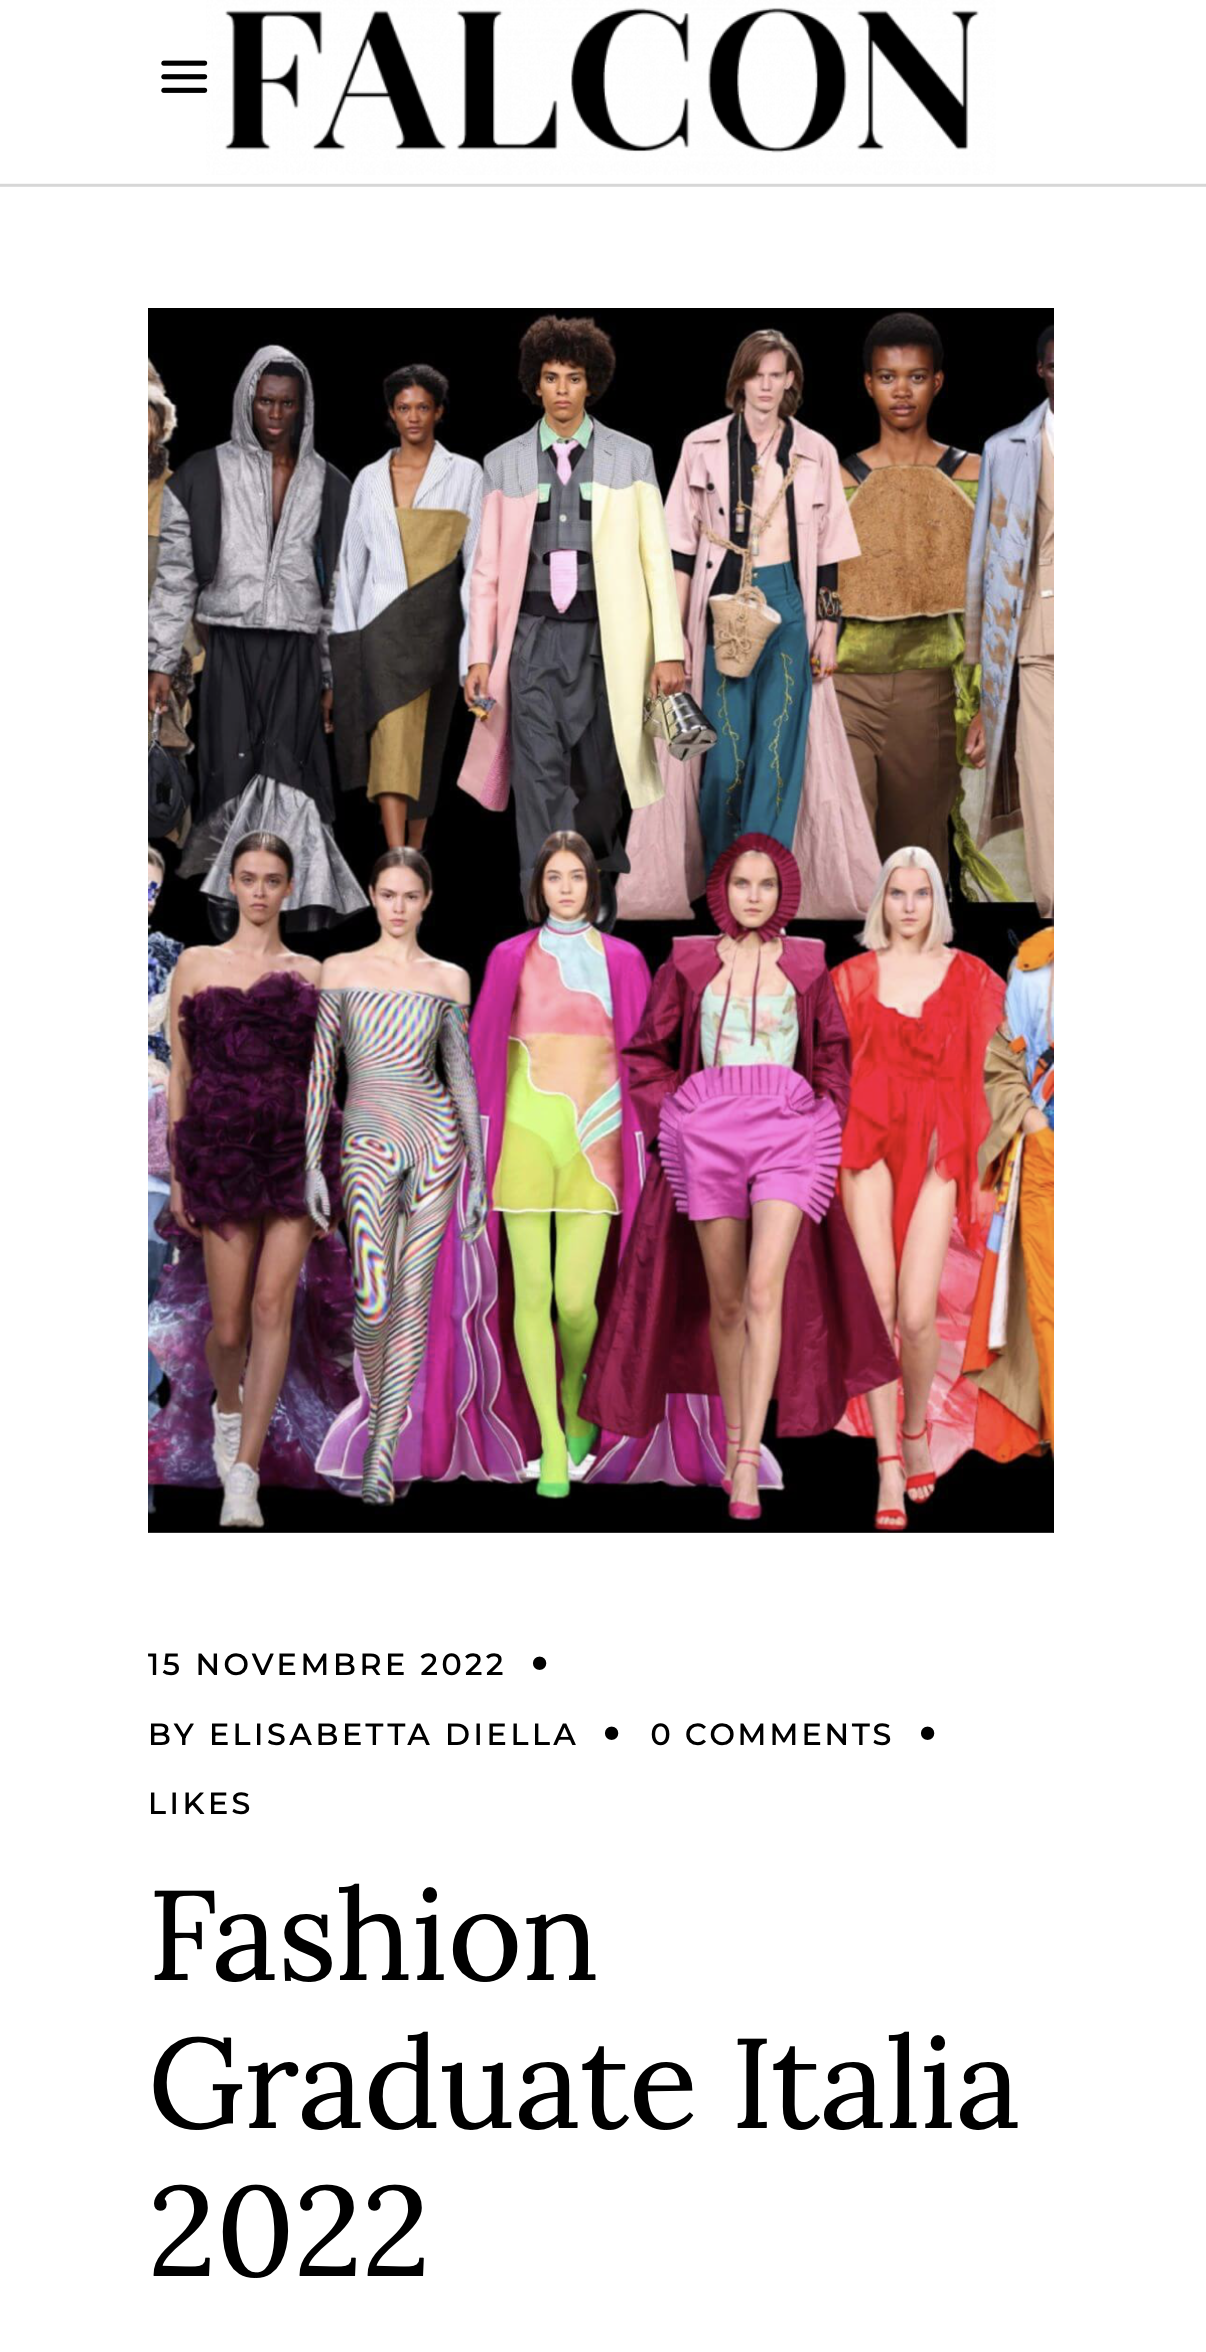 Fashion Graduate Italia 2022-Falcon Magazine-ENG